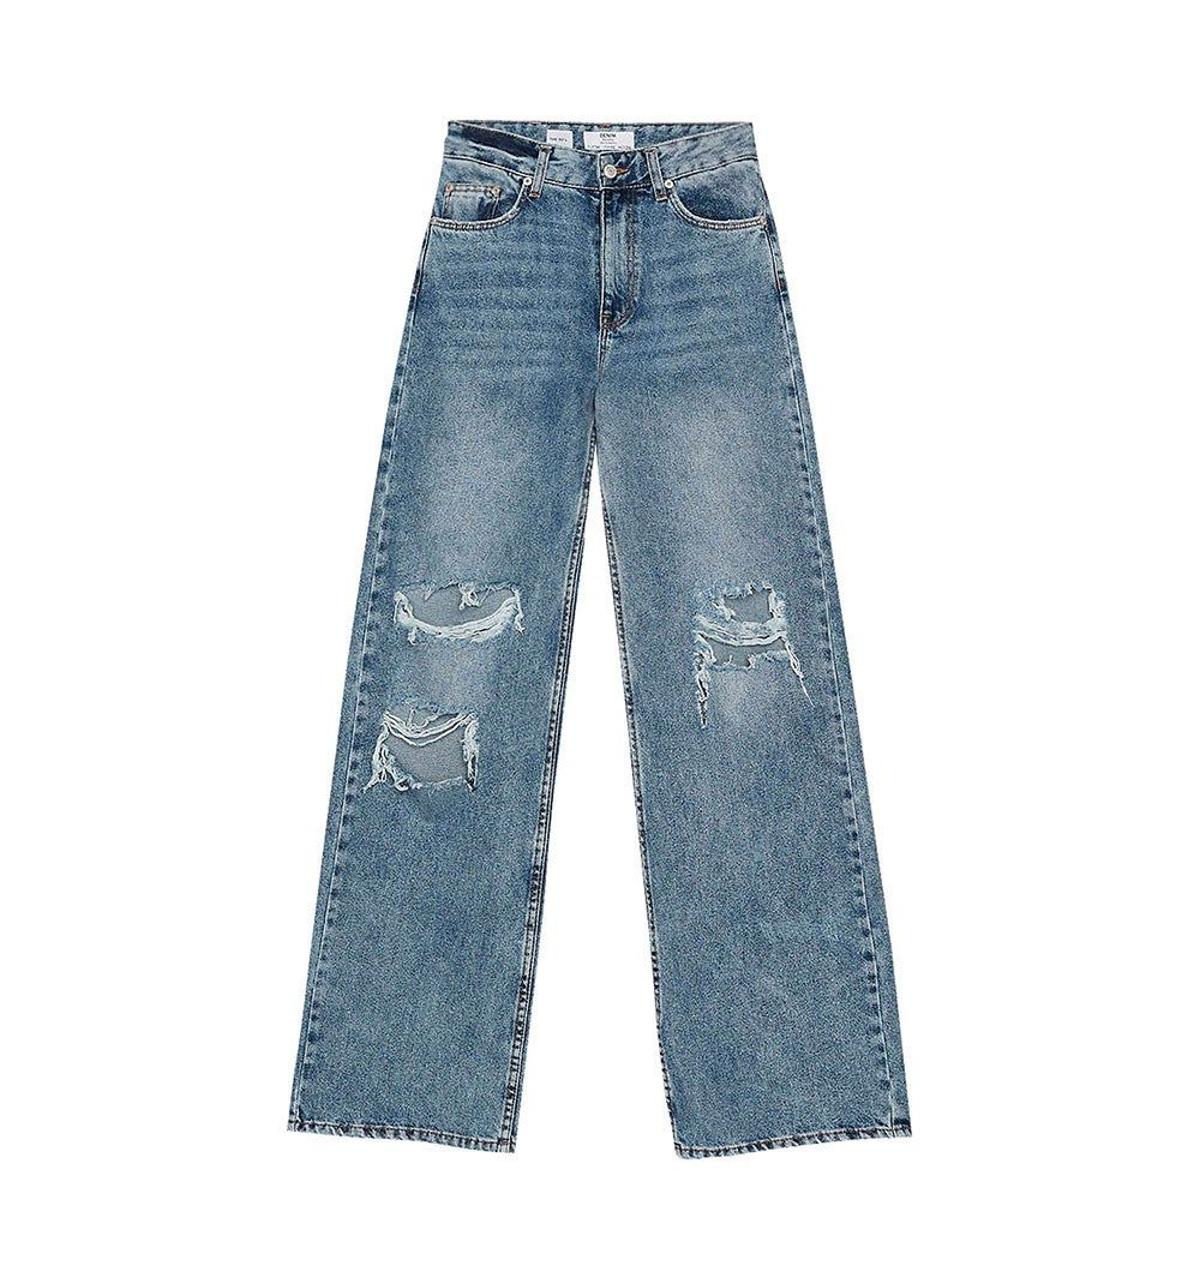 Jeans con corte de los 90 de Bershka. (Precio: 29,99 euros)